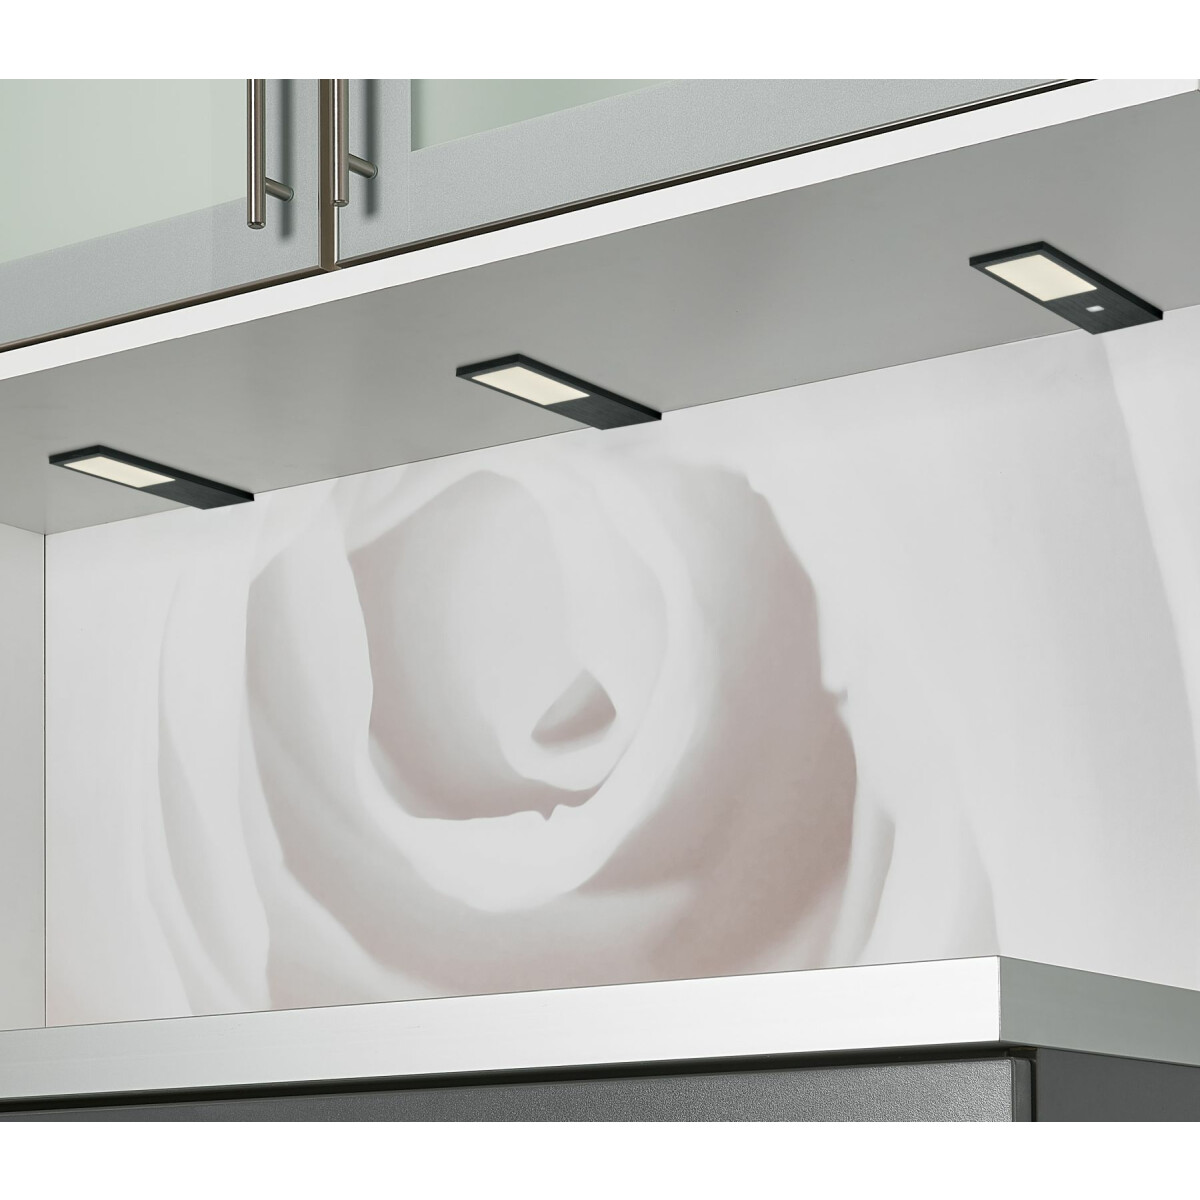 Küche Unterbauleuchte W, warmweiss Küchenleuchte 2x4 LED Gamma,